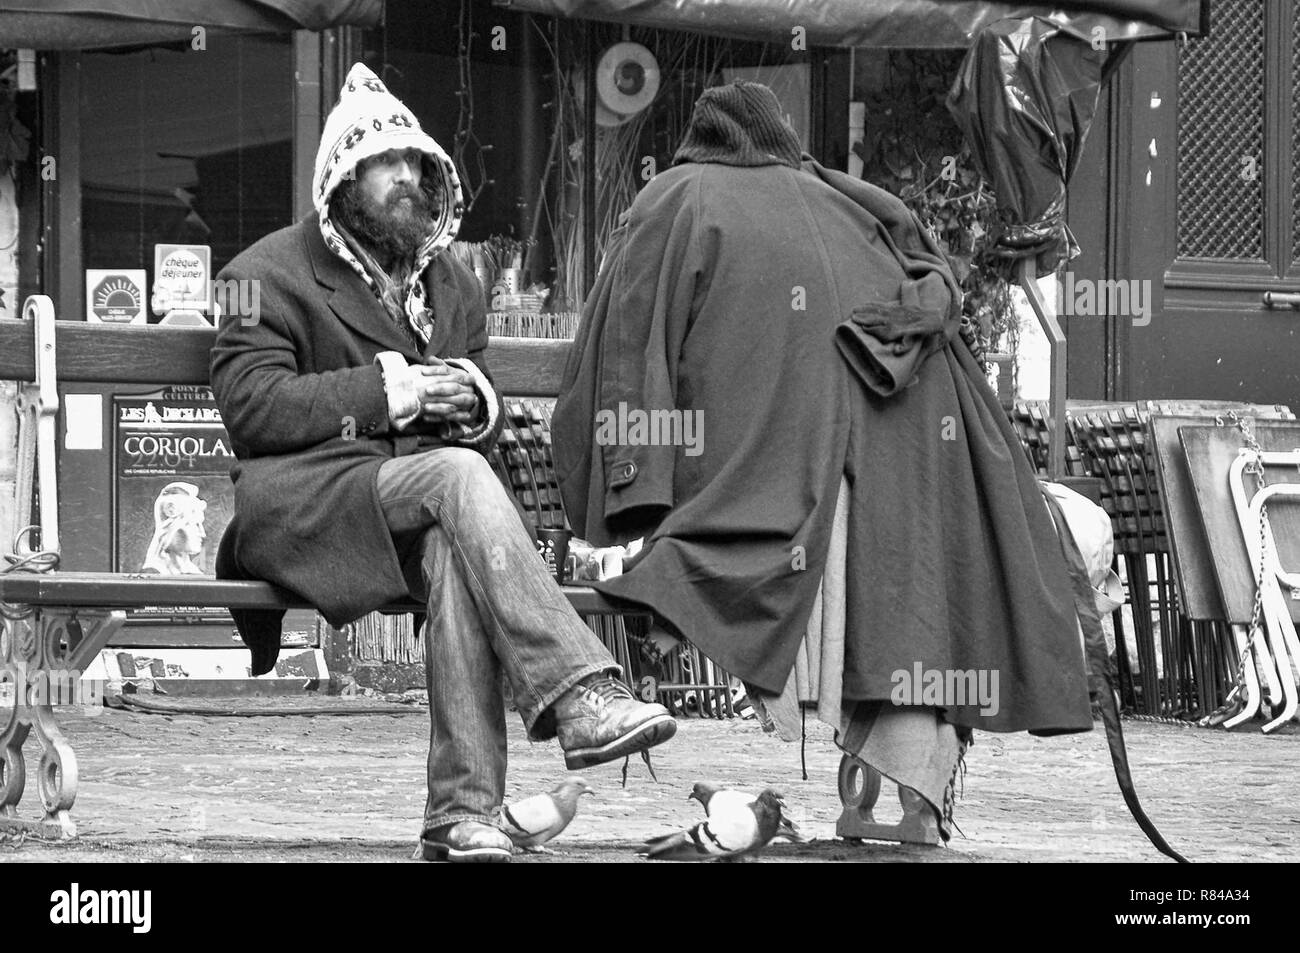 Personnage excentrique avec toutes ses possessions, est assis sur un banc de la Place du marché Sainte-Catherine, le Marais, Paris, France, version noir et blanc Banque D'Images